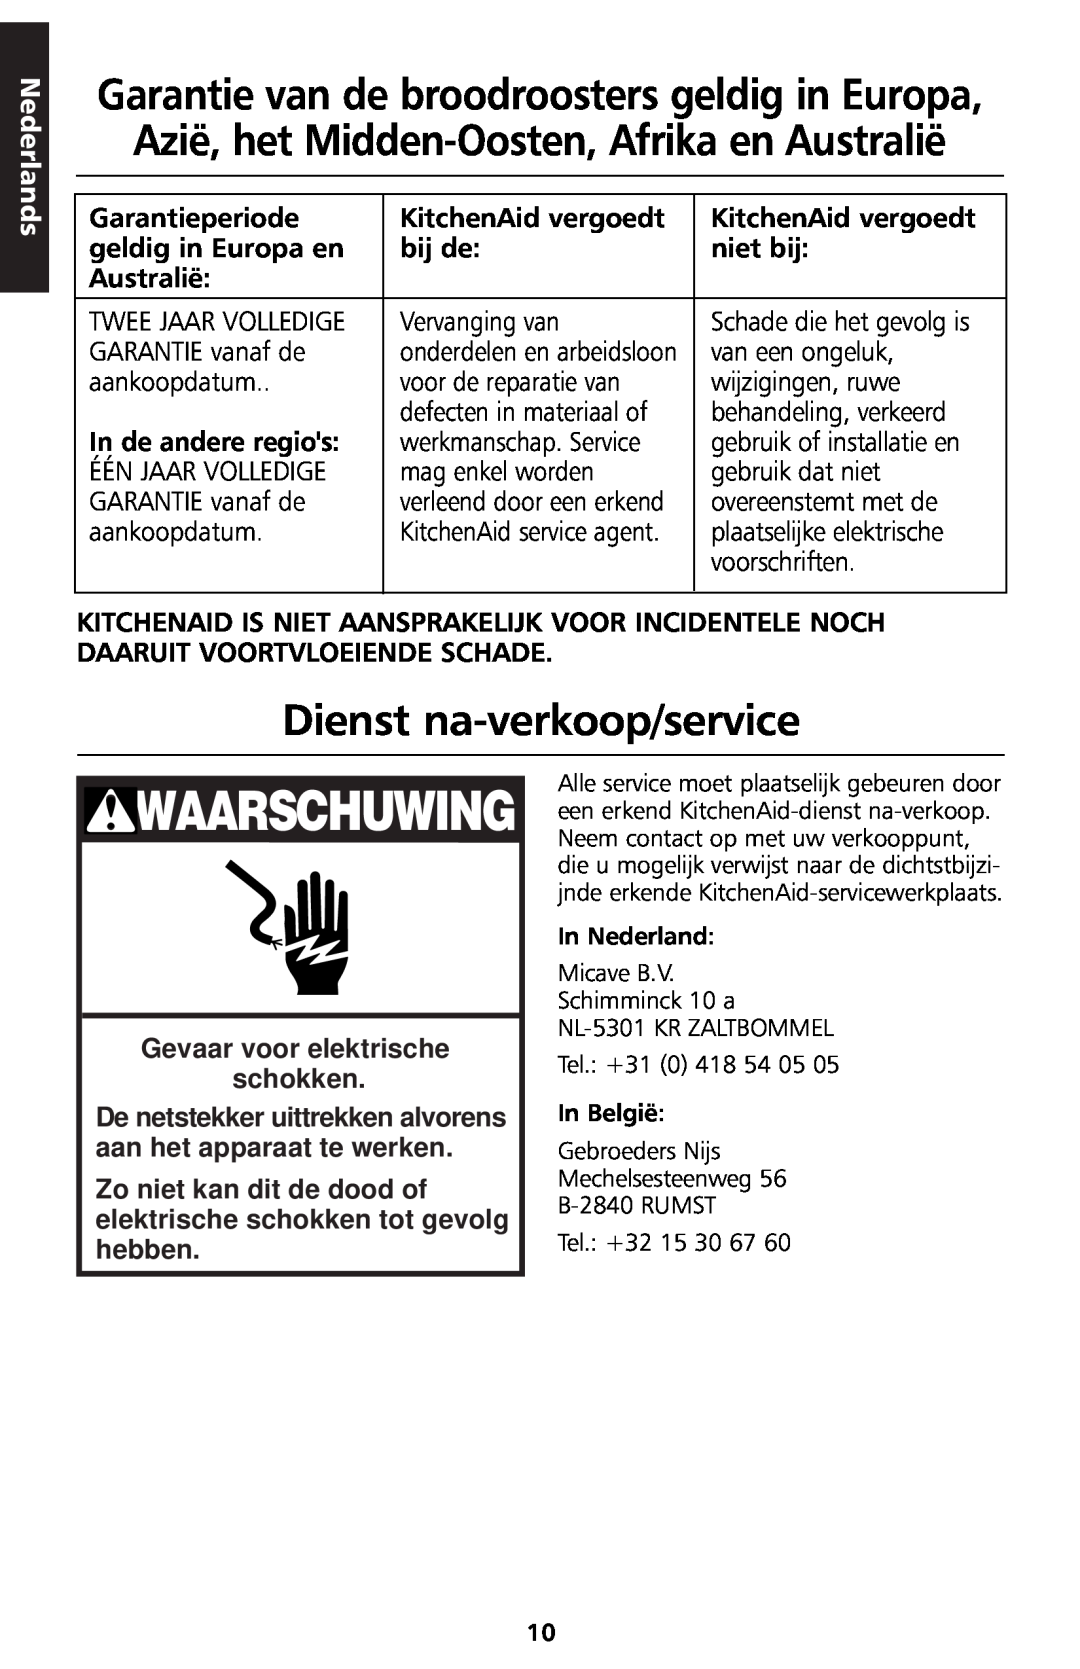 KitchenAid 5KTT890 manual Dienst na-verkoop/service, Waarschuwing, Nederlands, Gevaar voor elektrische schokken 